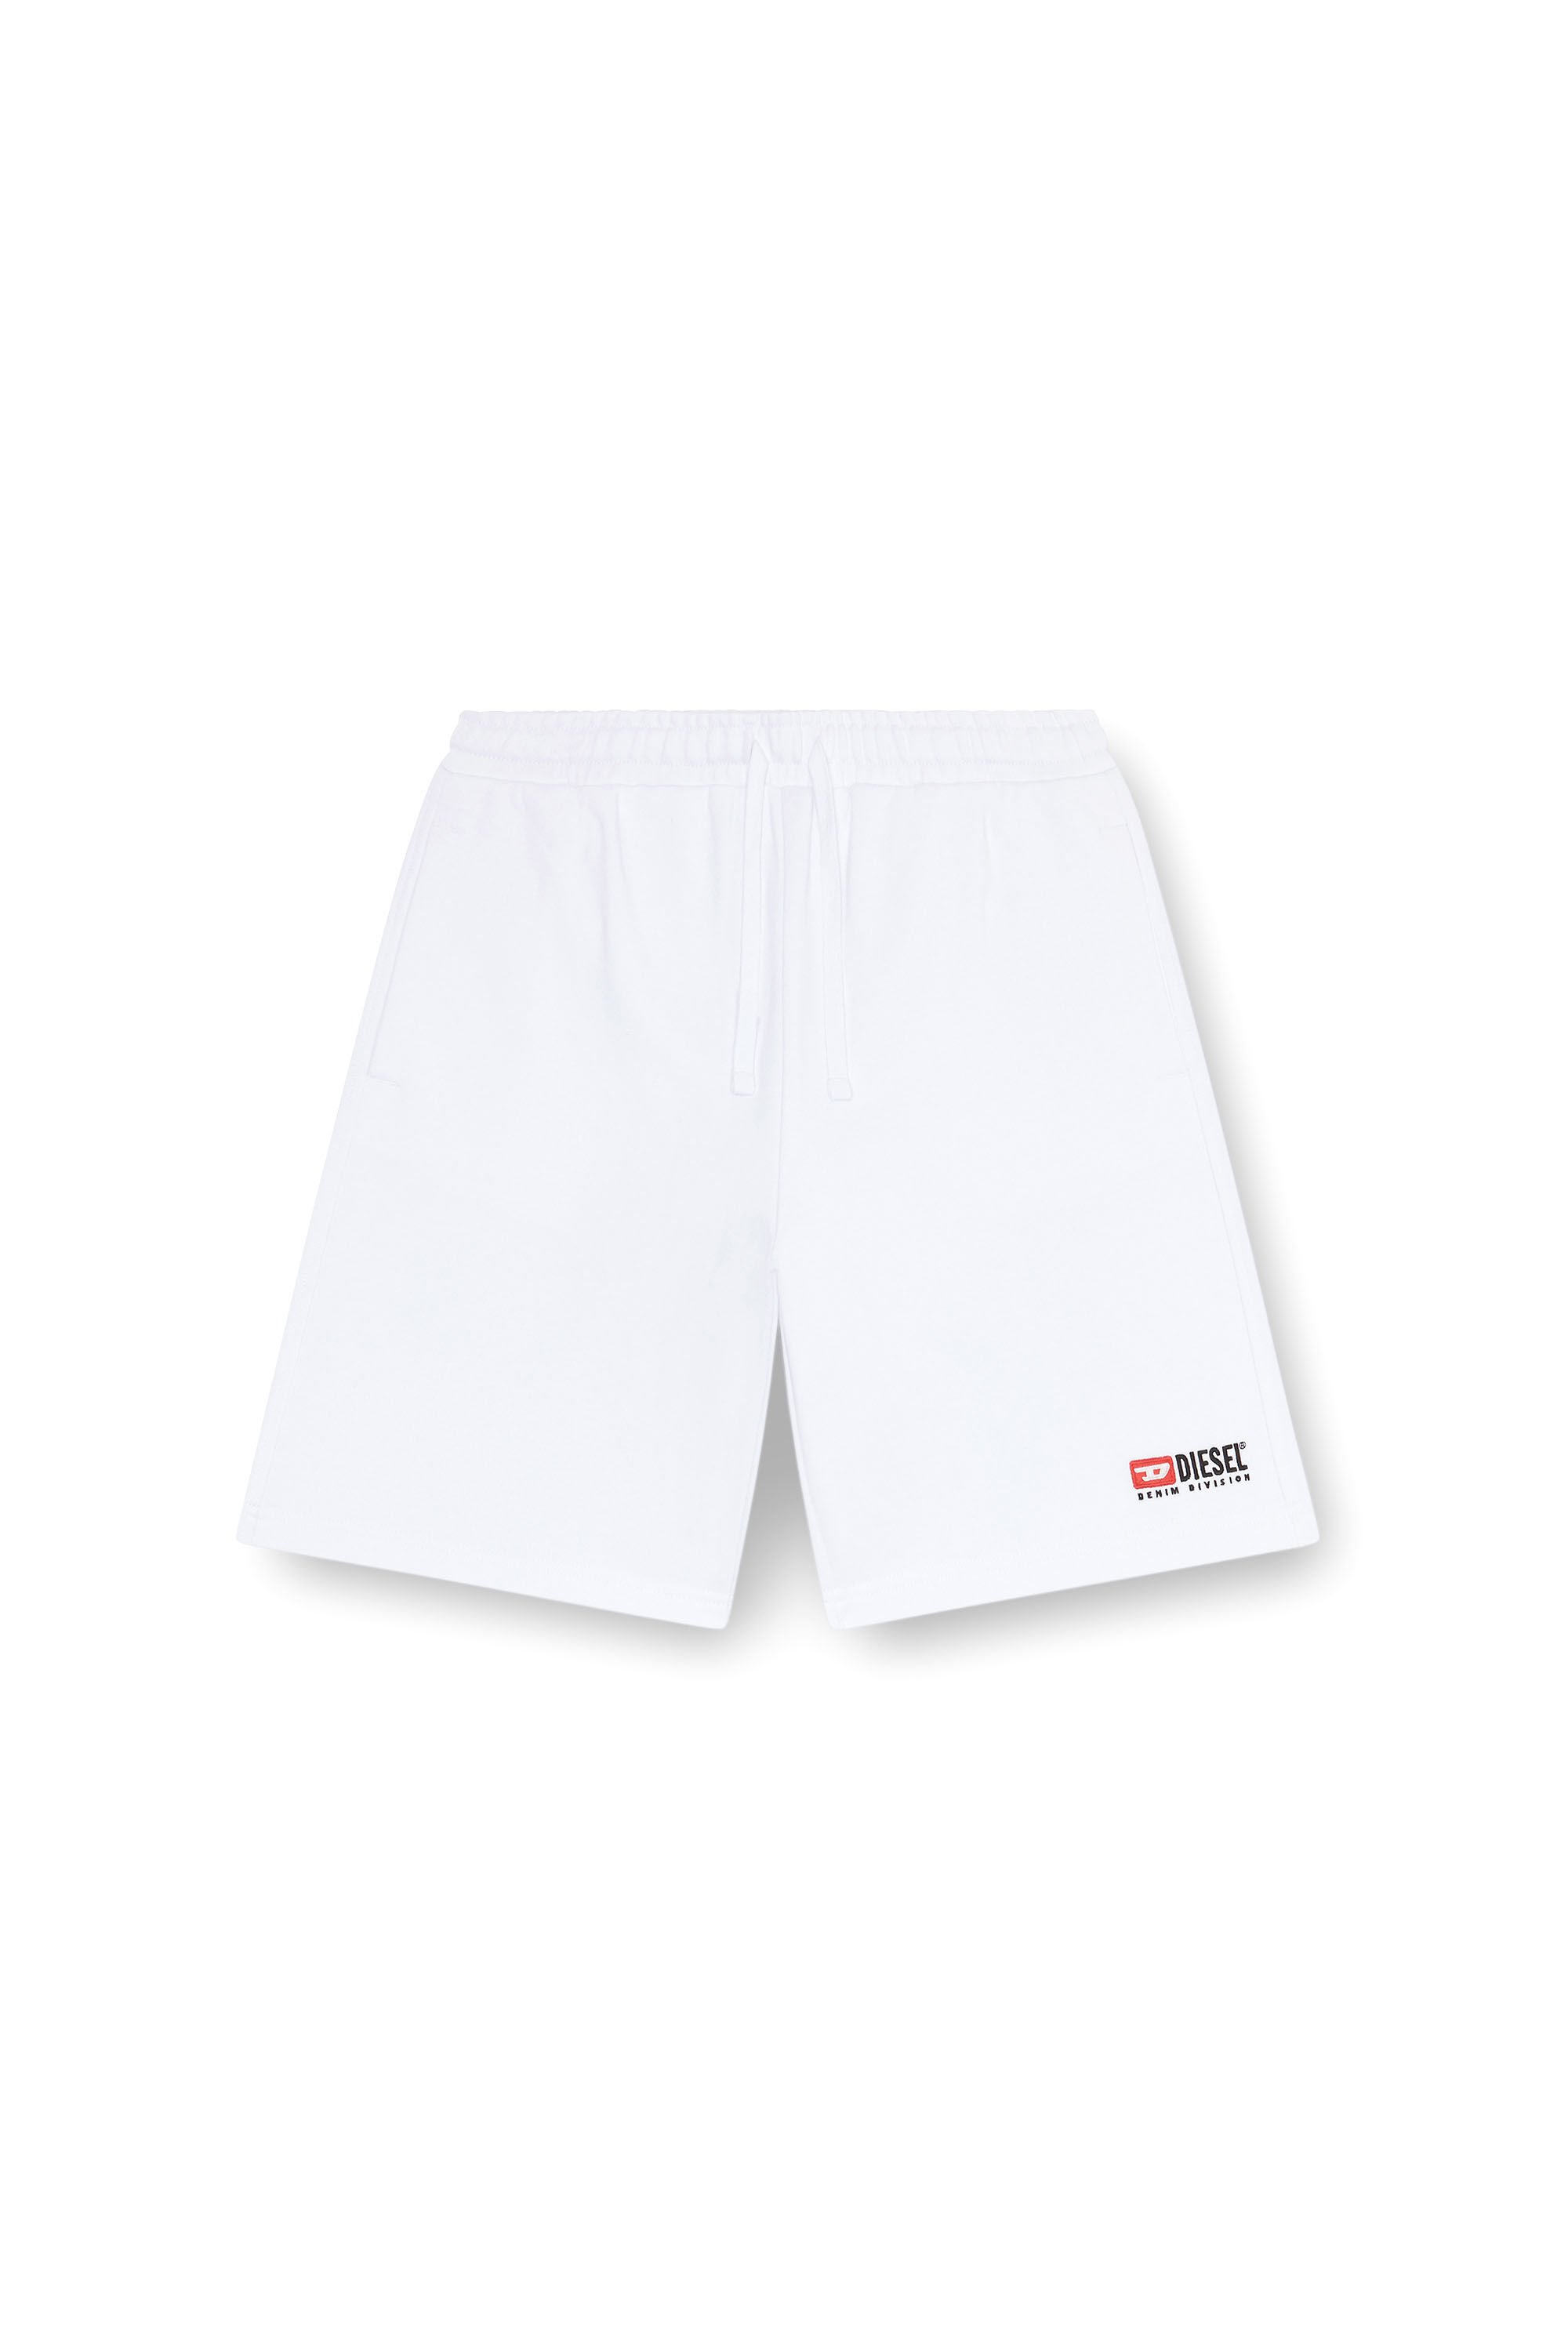 Diesel - P-CROWN-DIV, Hombre Pantalones cortos deportivos con logotipo bordado in Blanco - Image 2